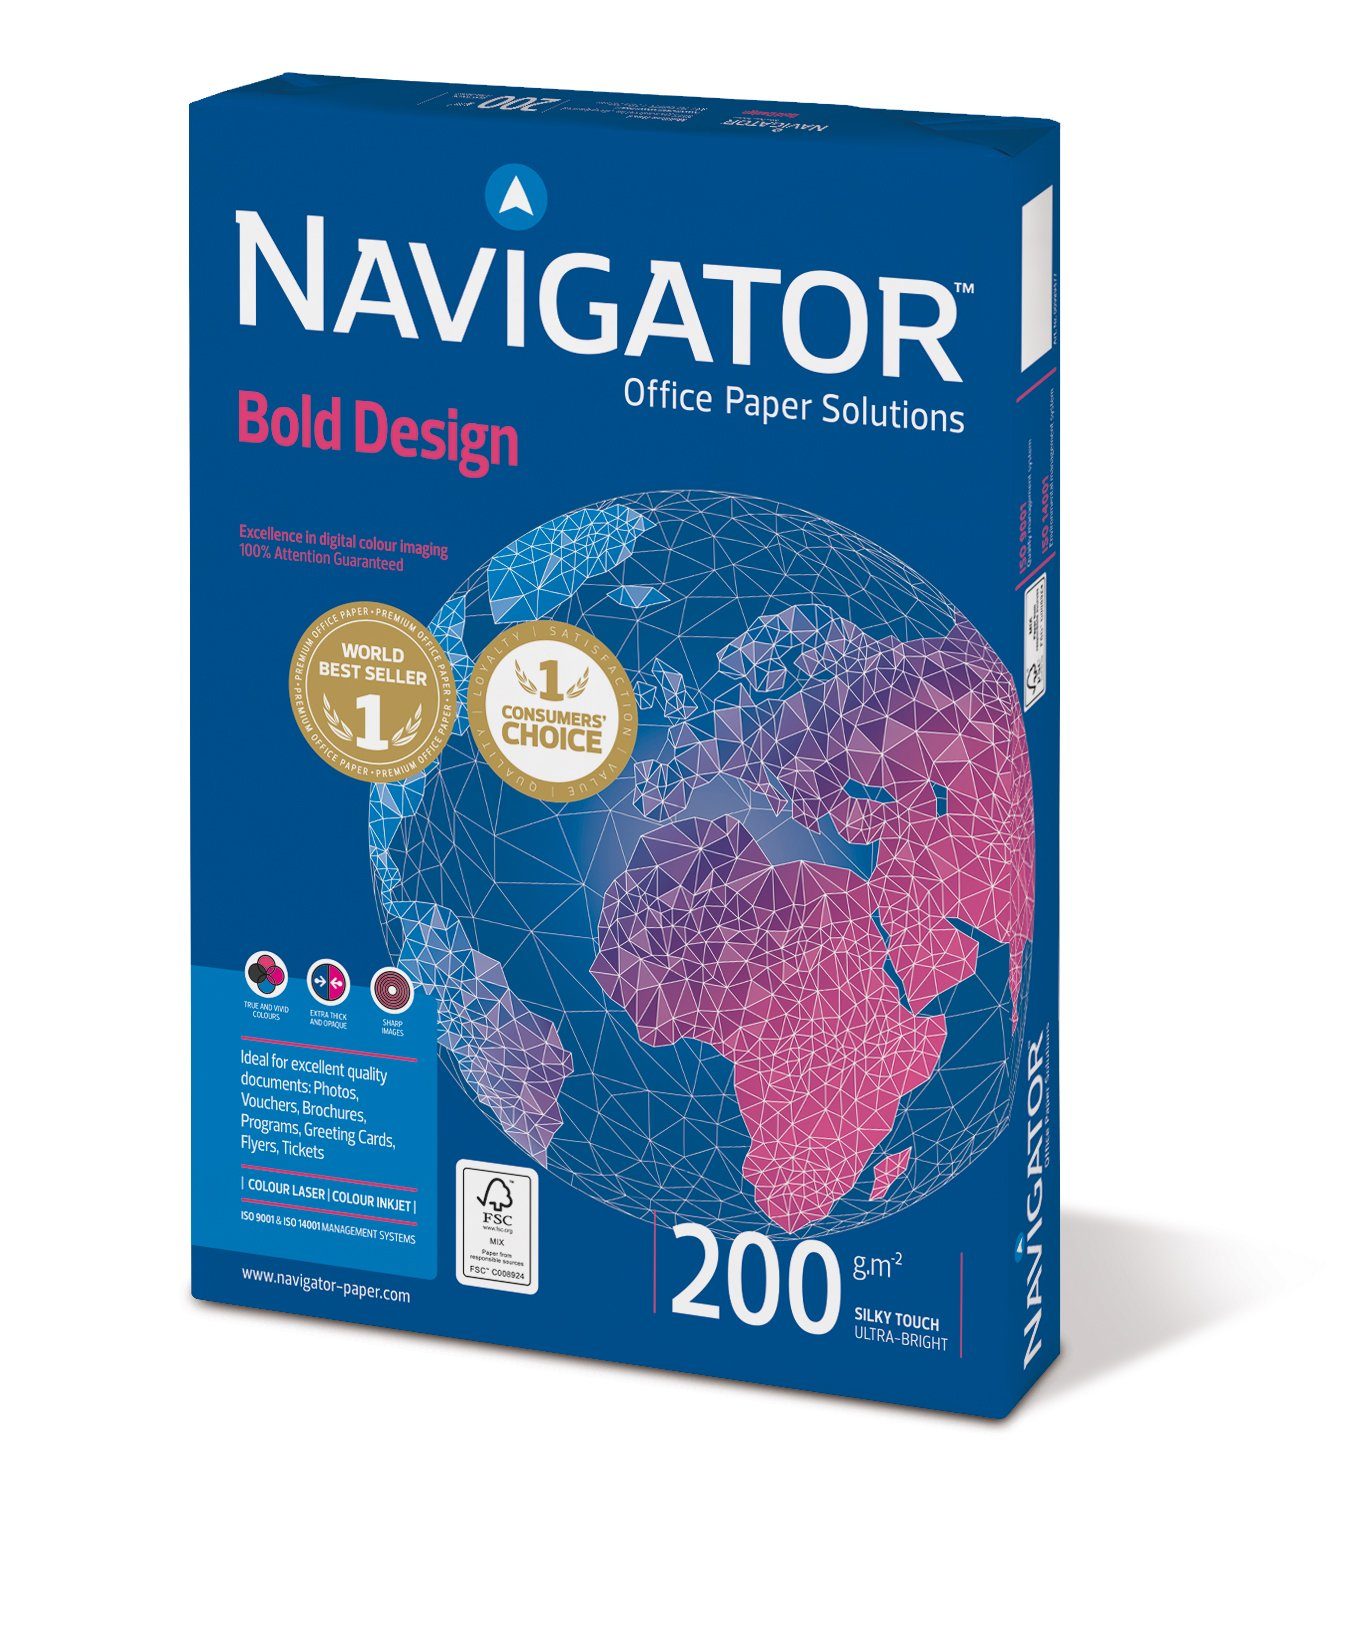 1050 Drucker- 200g/m² Bold und DIN-A4 Kopierpapier Design Kopierpapier Navigator Blatt weiß NAVIGATOR